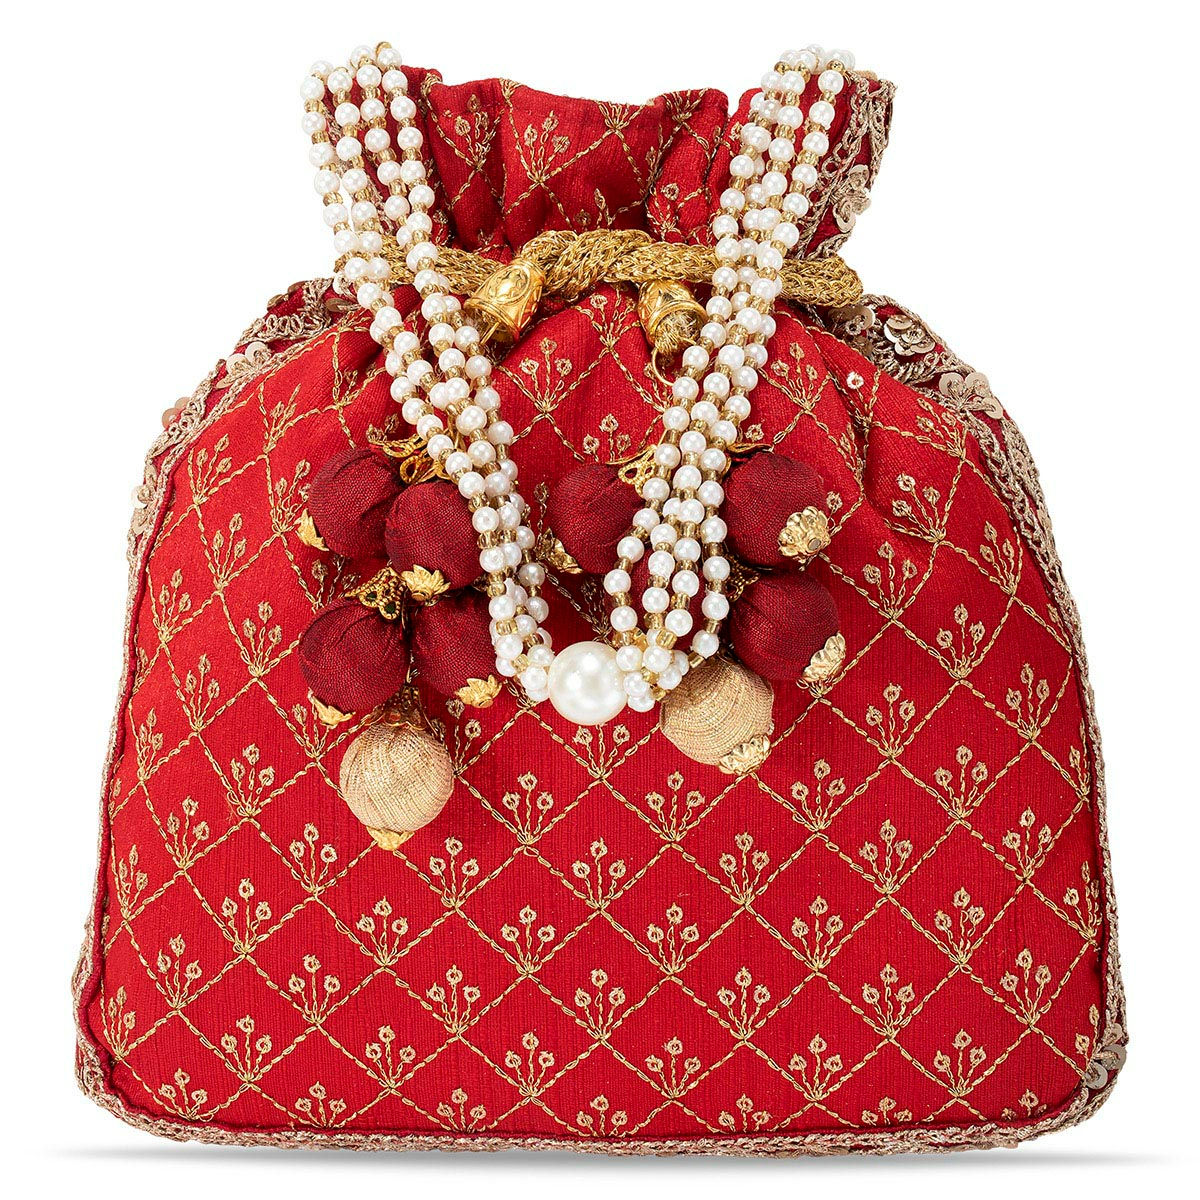 Red Crystal Evening Bag Rhinestone Clutch Purse Prom Handbags | Baginning